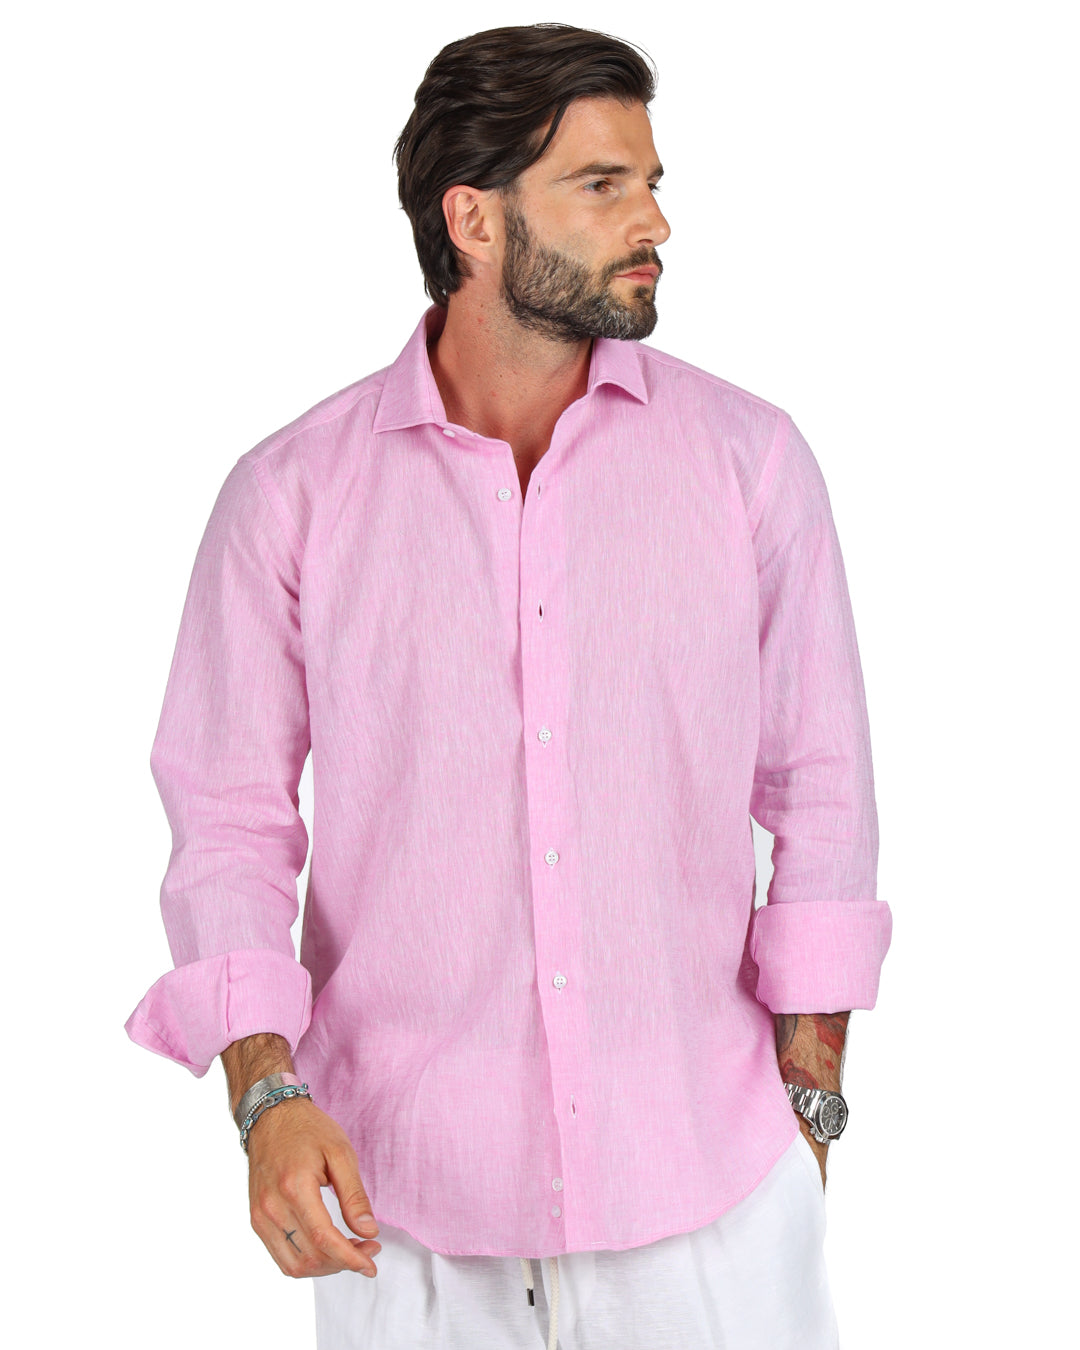 Praiano - Classic pink linen shirt